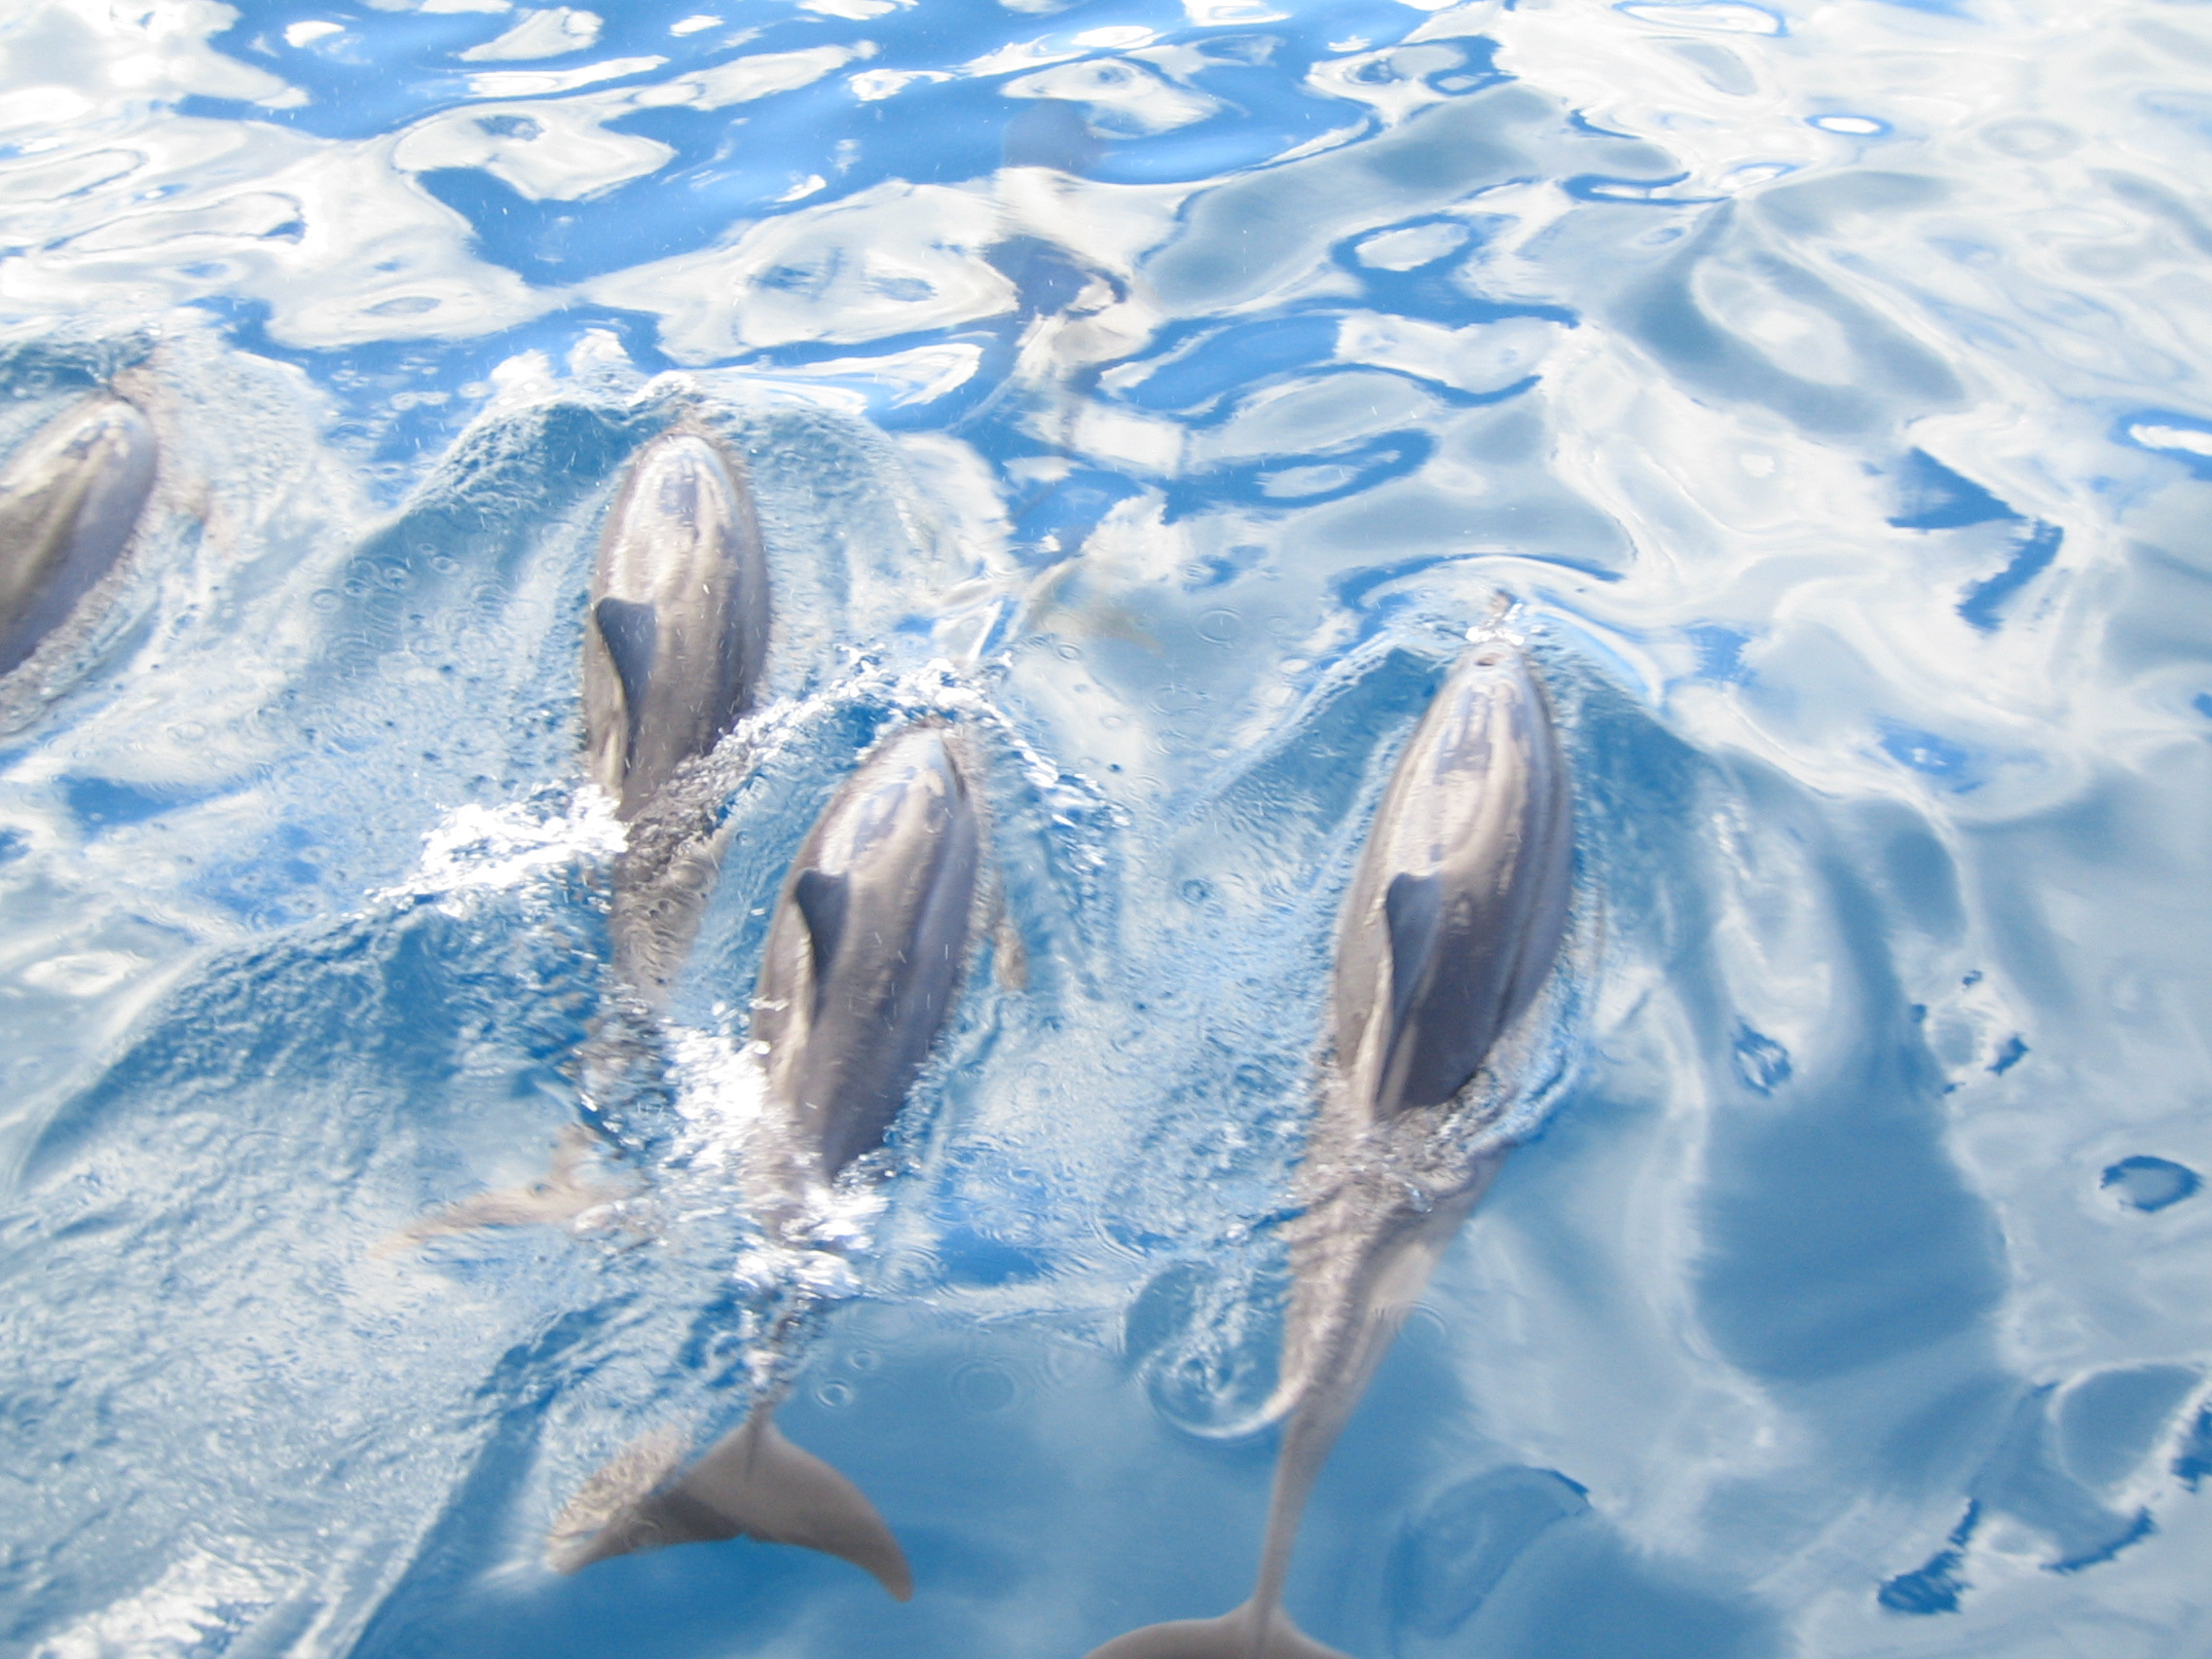 Oahu - Dolphins in Ocean